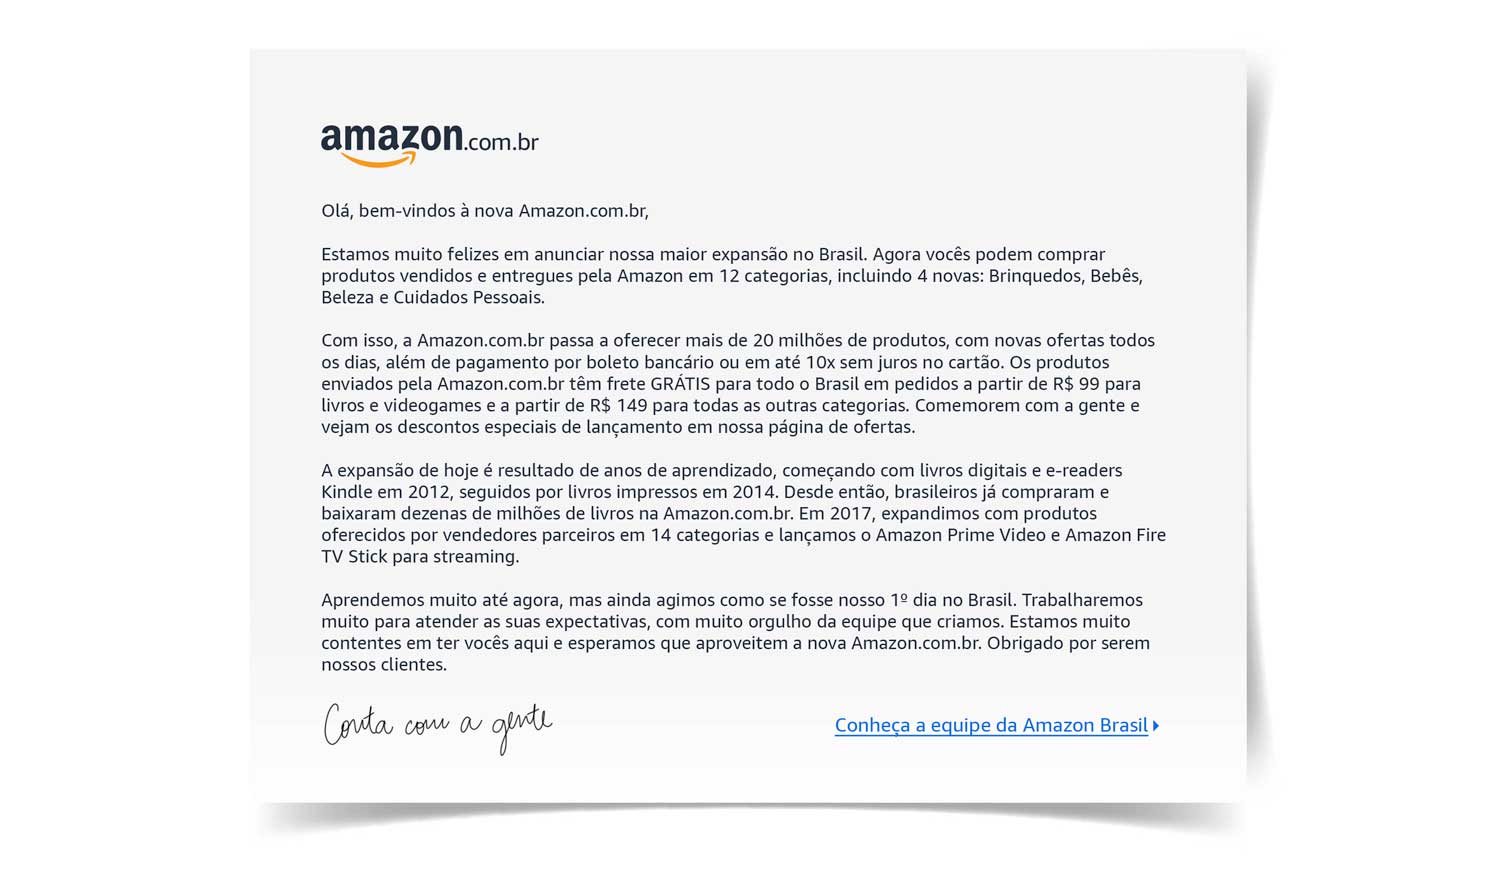 Amazon anuncia expansão de suas operações no Brasil